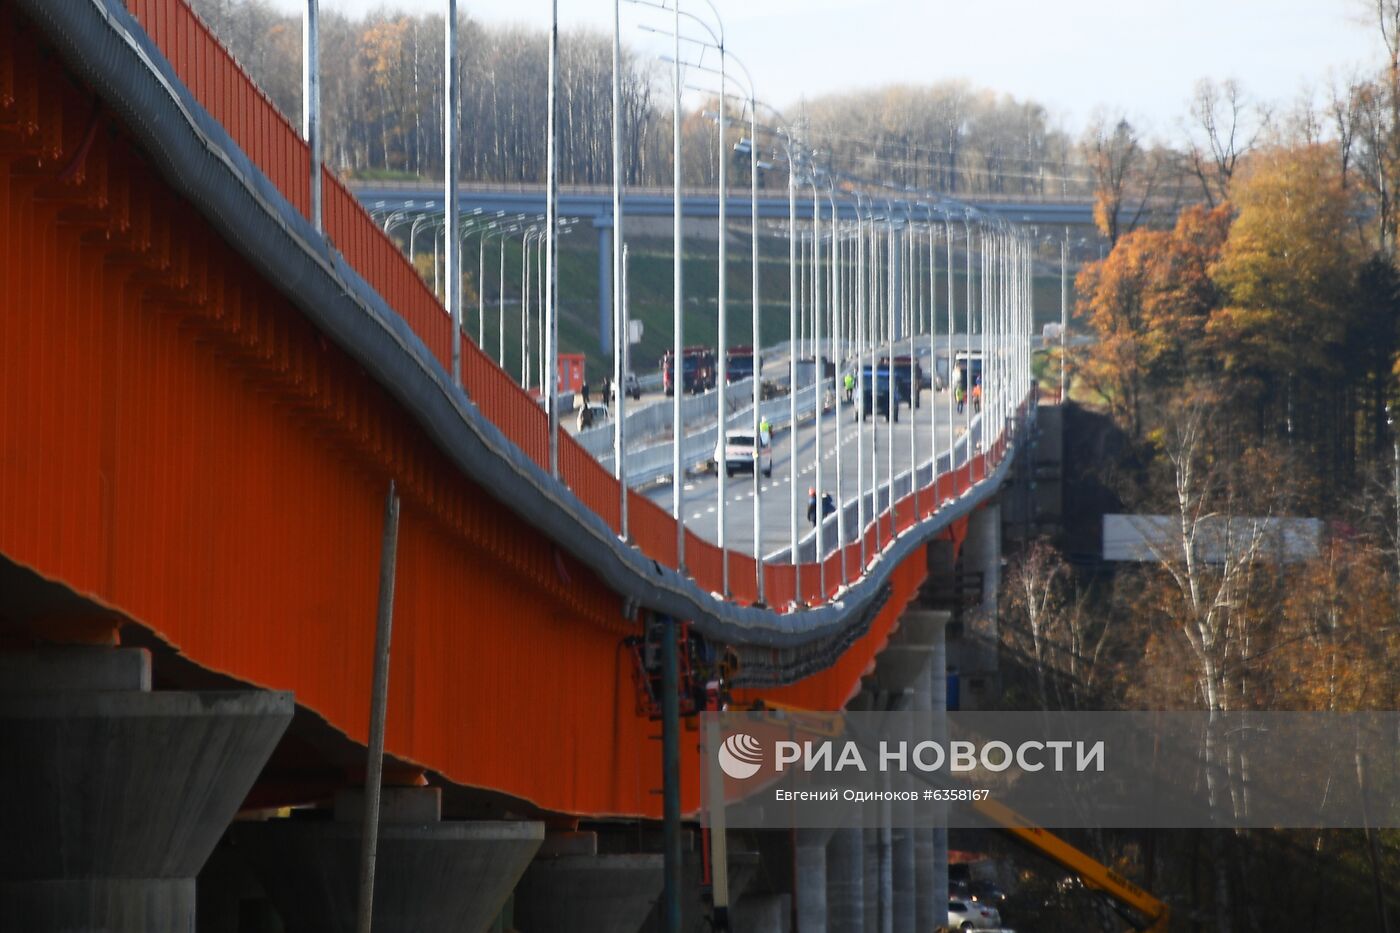 Демонстрация испытаний крупных мостов на прочность на ЦКАД-3